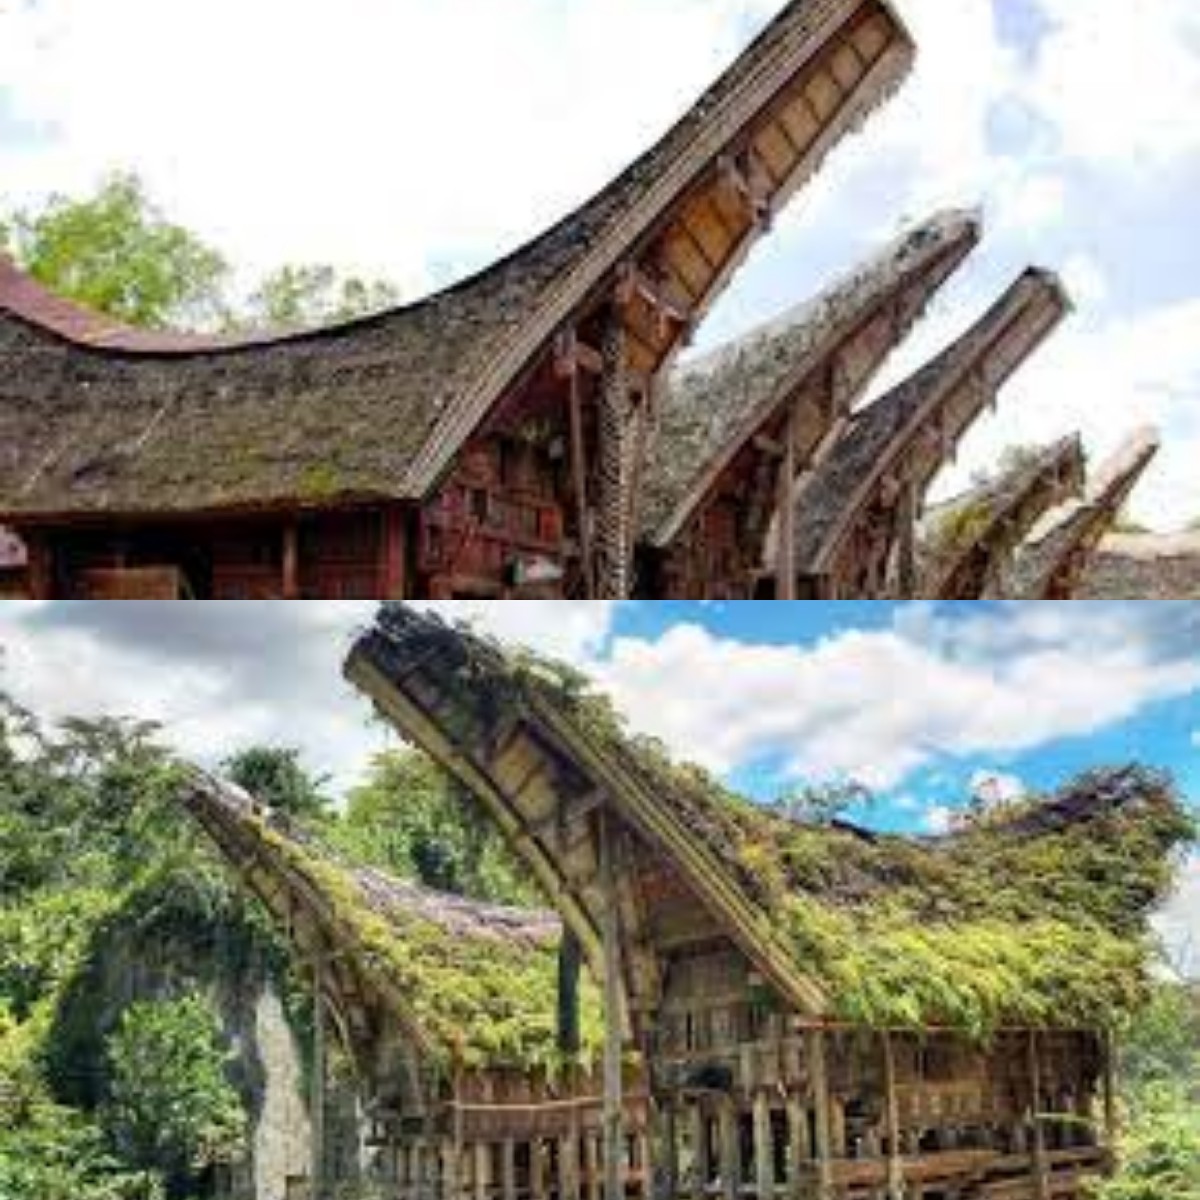 Mengenal Keunikan Rumah Adat Toraja: Tongkonan